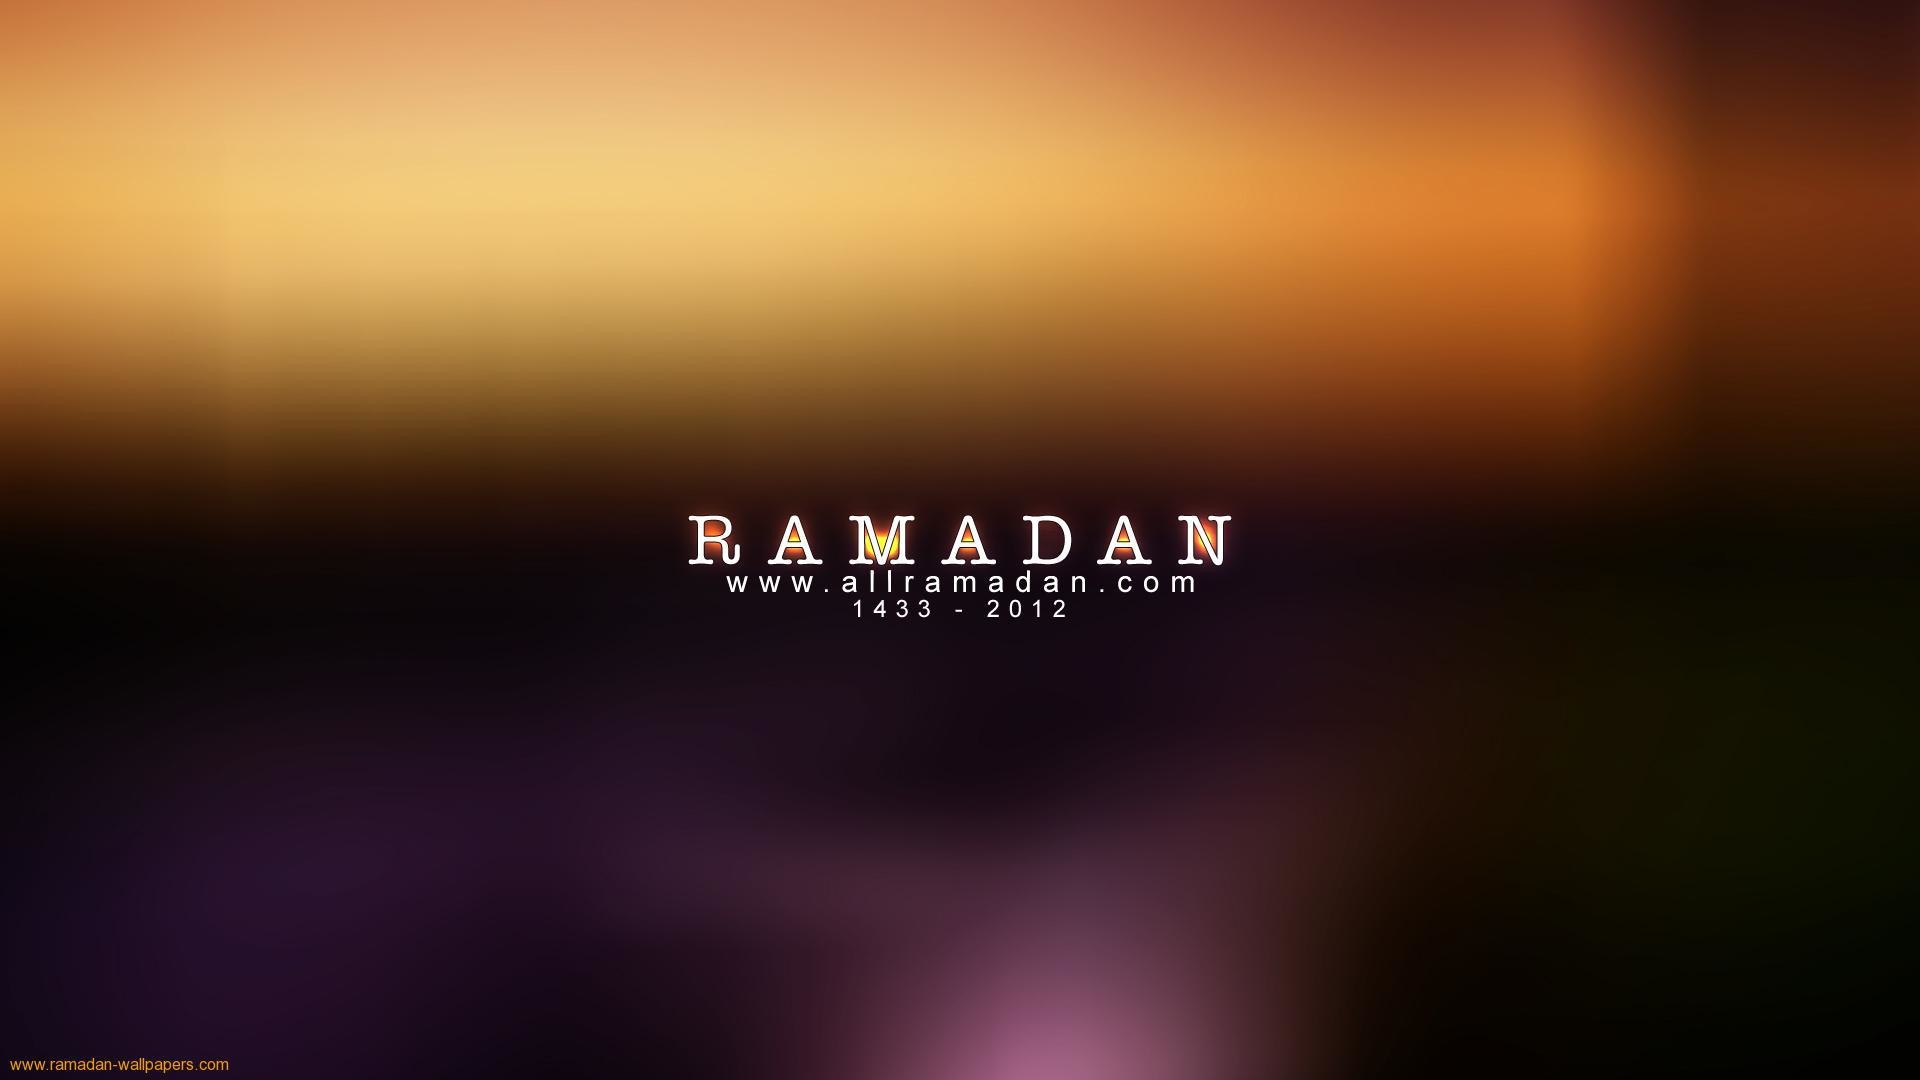 Обои с Рамазан с надписью